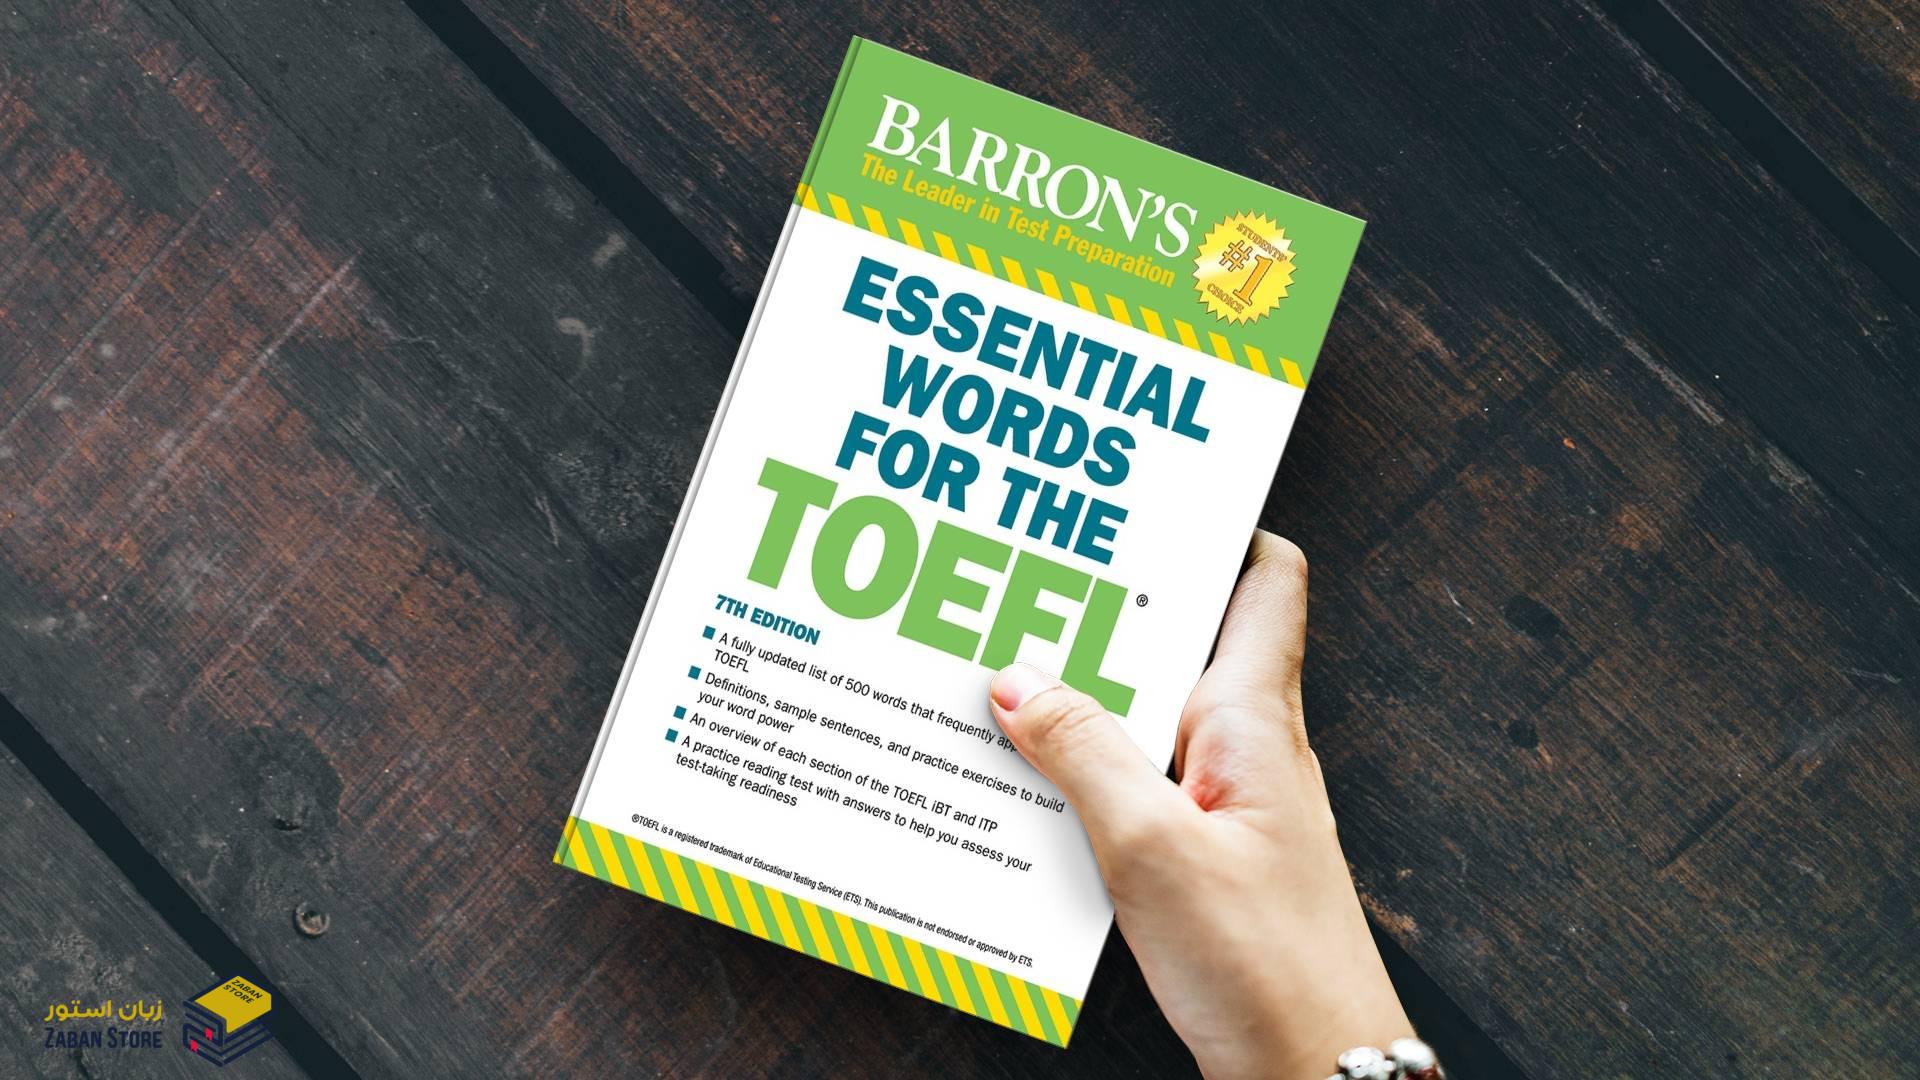 خرید کتاب انگلیسی | فروشگاه اینترنتی کتاب زبان | Essential Words for Toefl 7th Edition | اسنشیال وردز فور آیلتس تافل ویرایش هفتم